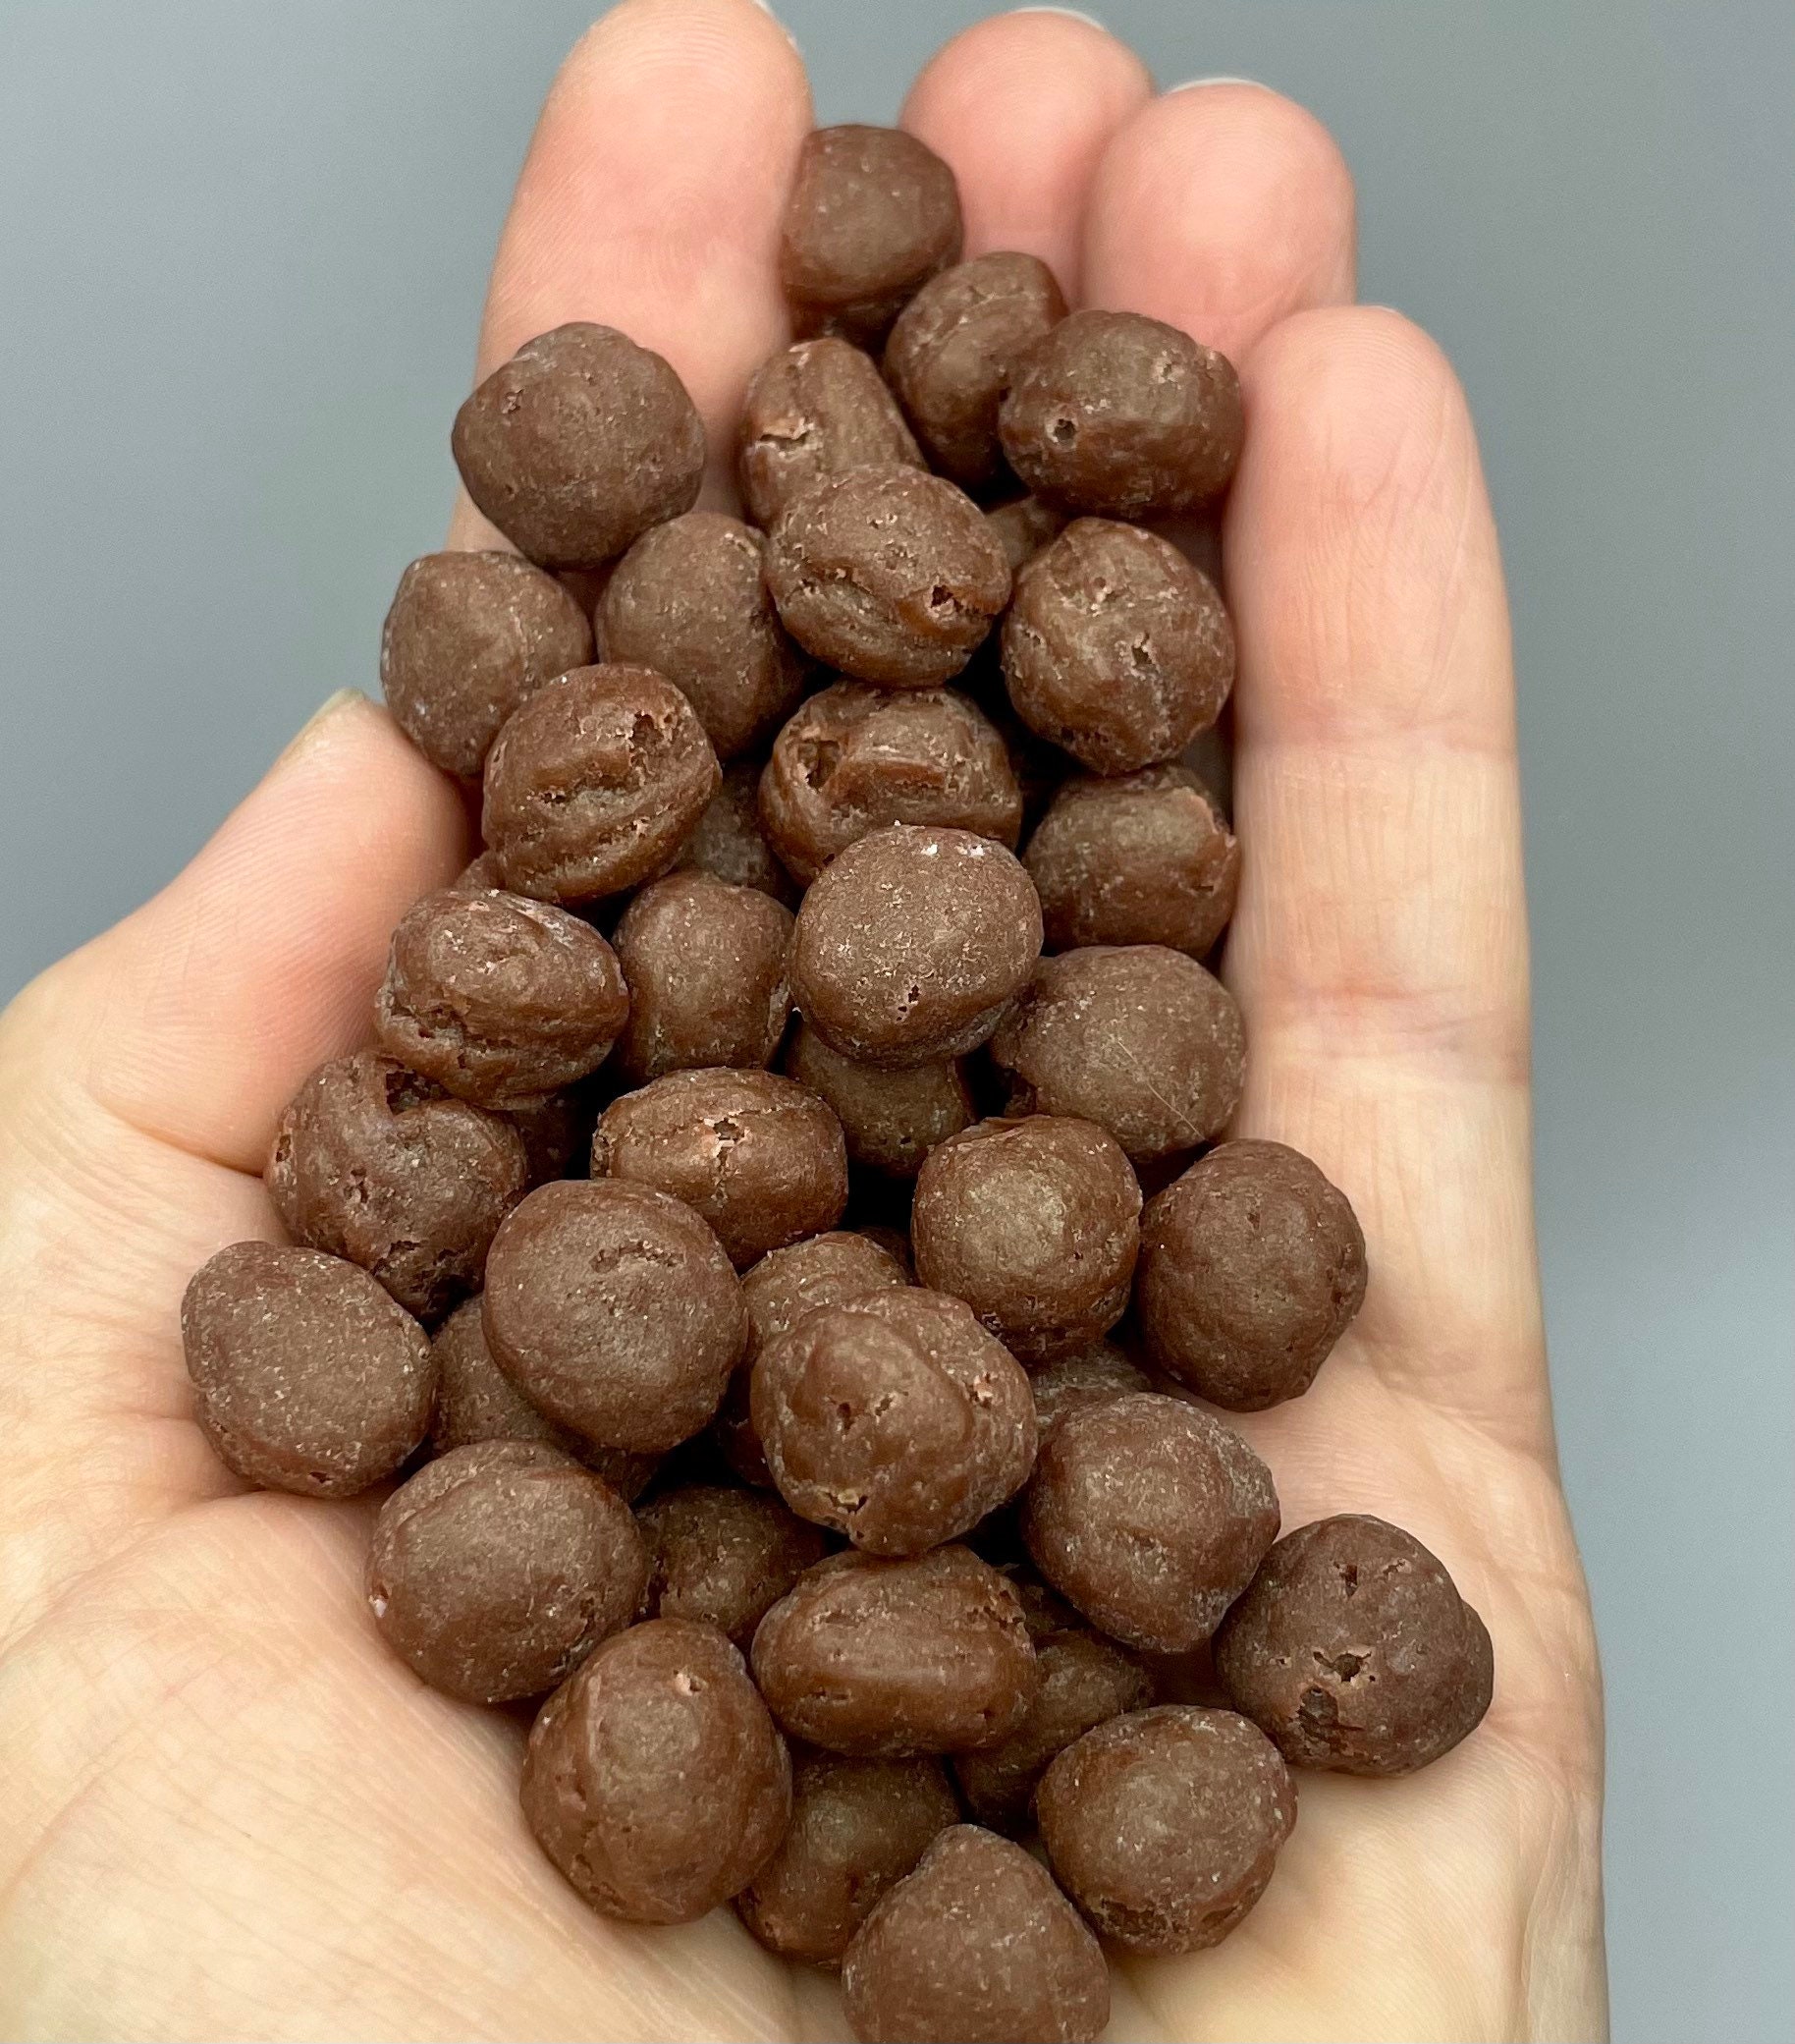 10 Moldes Silicona Chocolate Molde De Silicona Barra Cereal - Pastelería CL